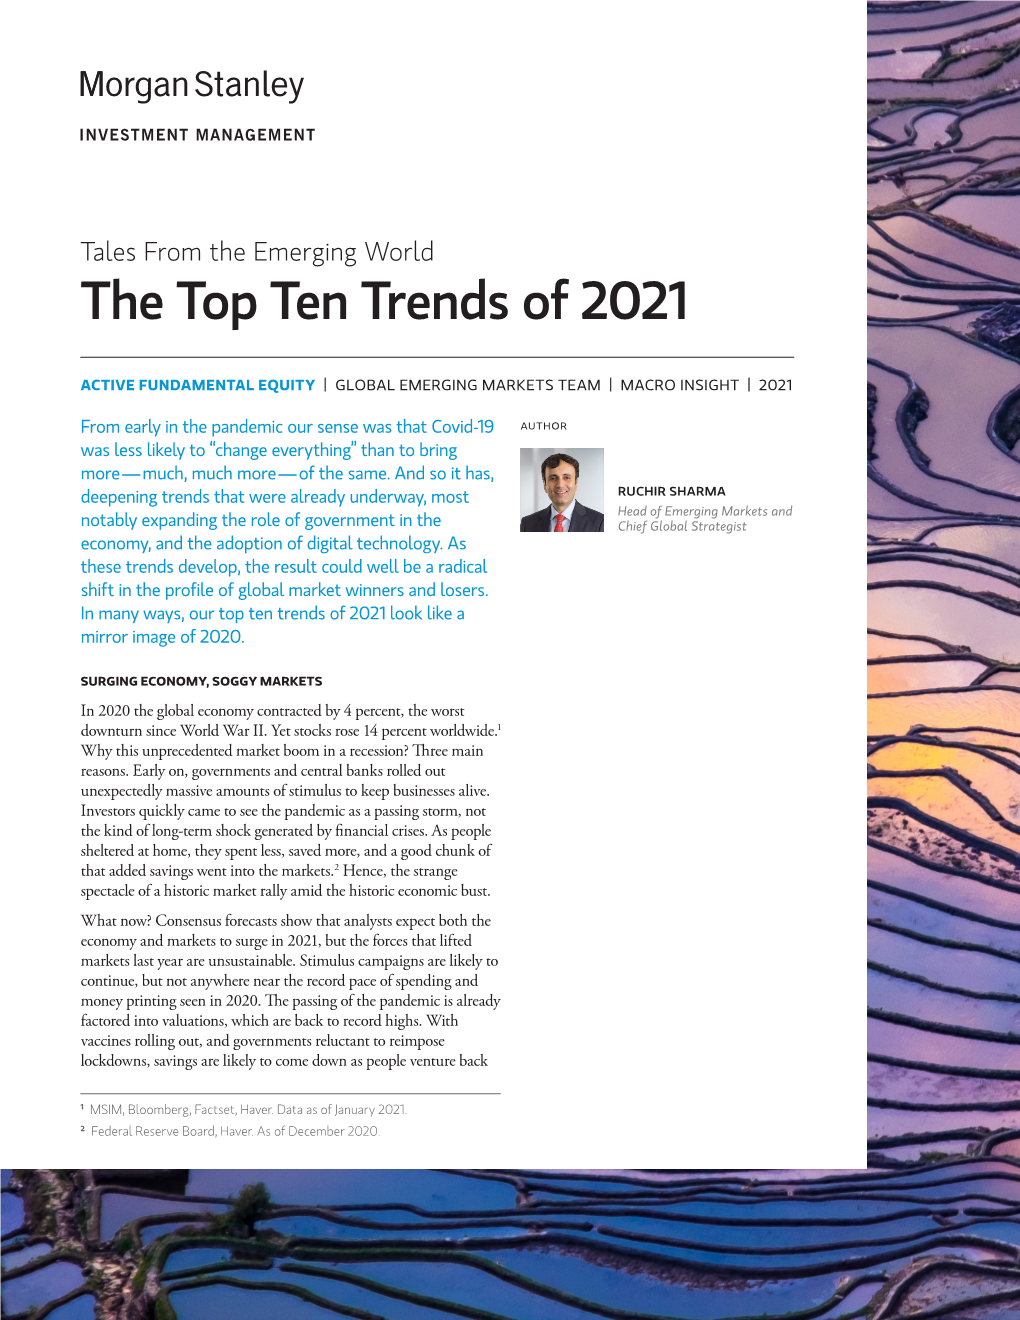 The Top Ten Trends of 2021